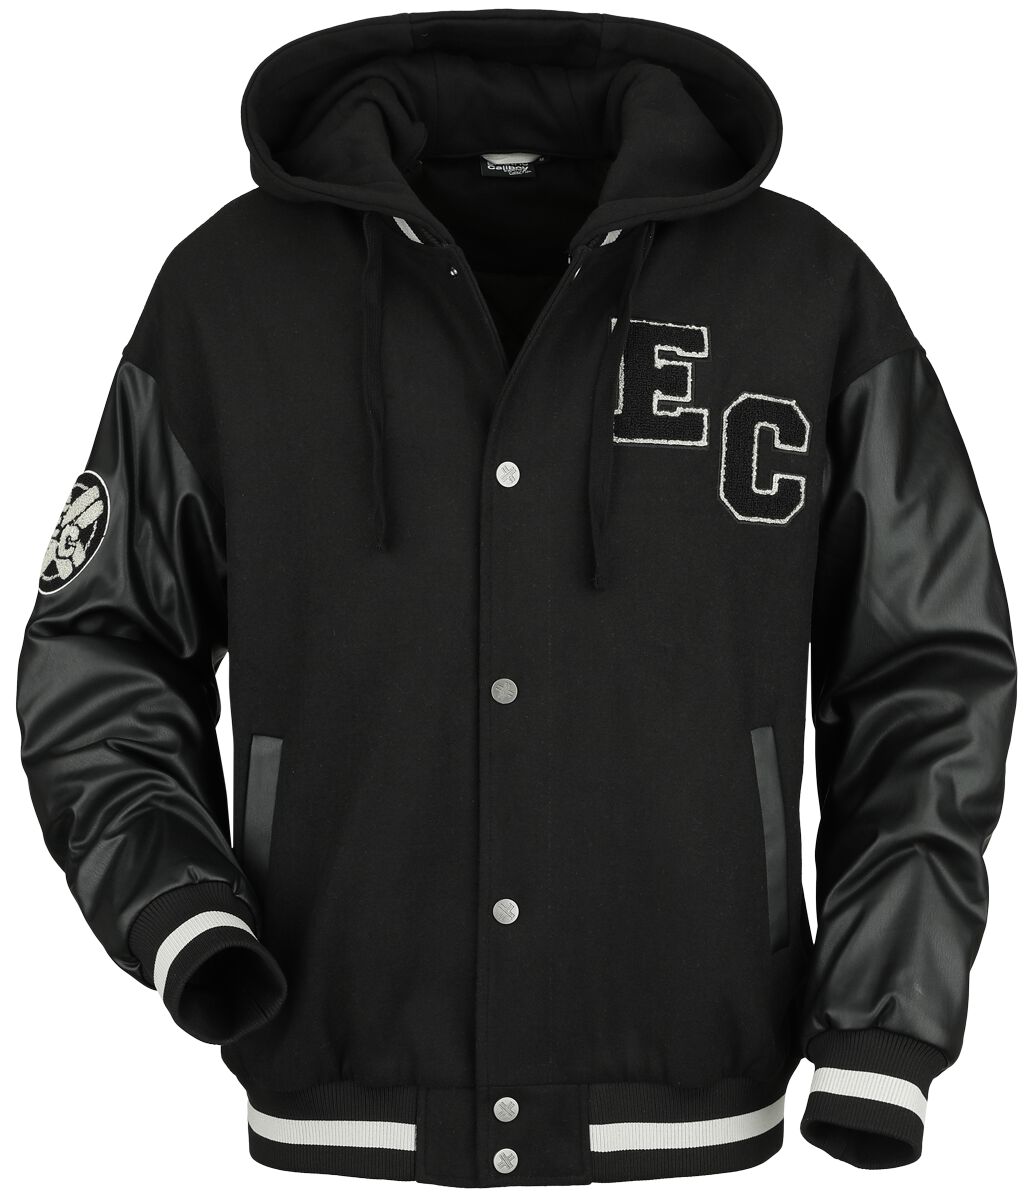 Electric Callboy Collegejacke - EMP Signature Collection - M bis XXL - für Männer - Größe L - schwarz/grau  - EMP exklusives Merchandise!